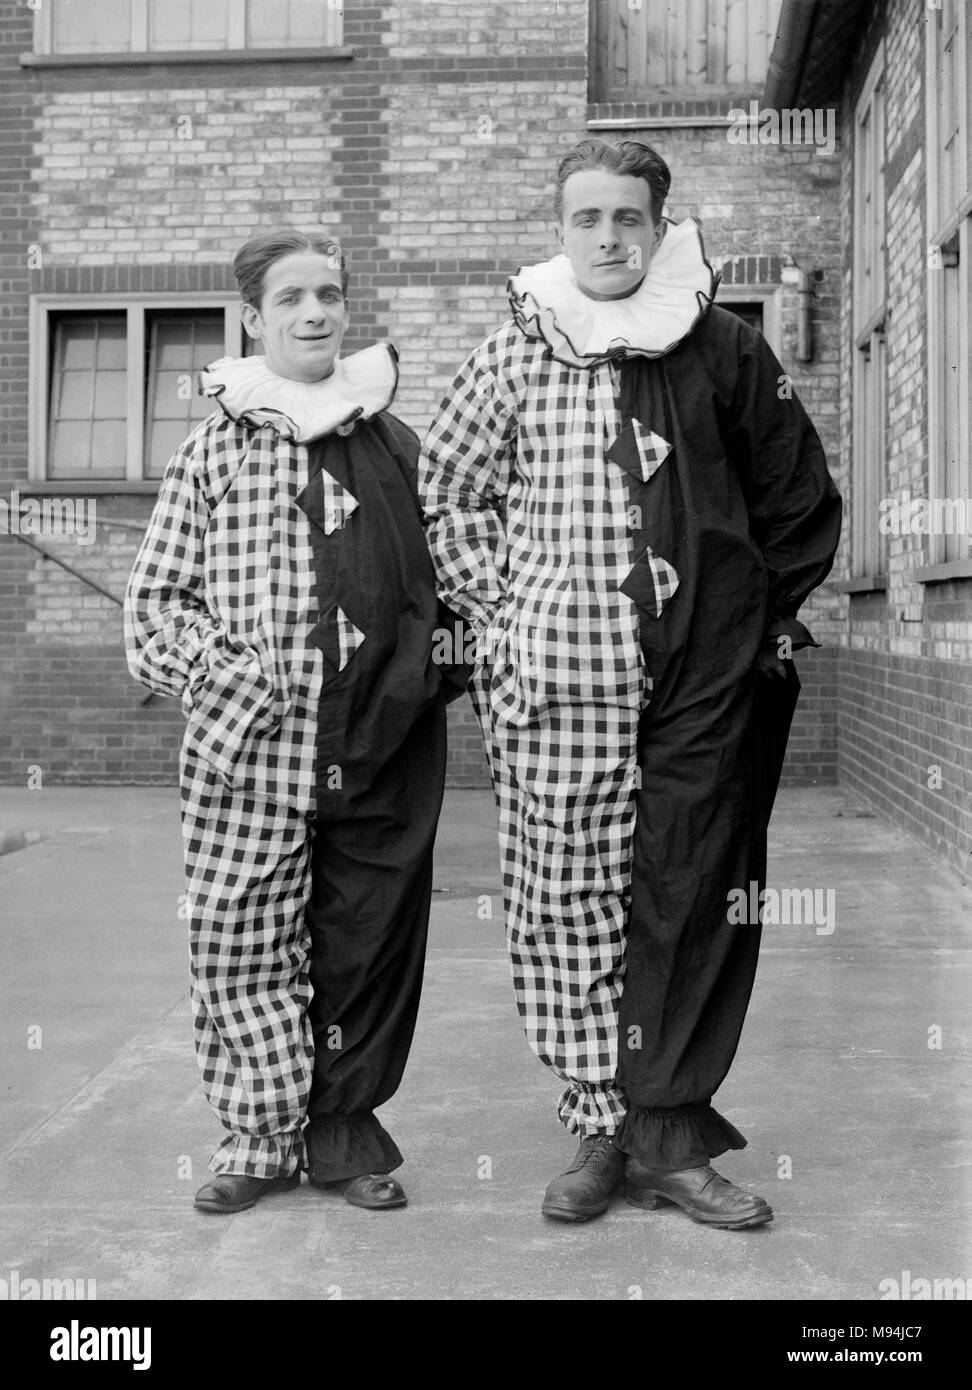 Deux clowns du style Pierrot posent au Royaume-Uni, ca. 1920. Banque D'Images